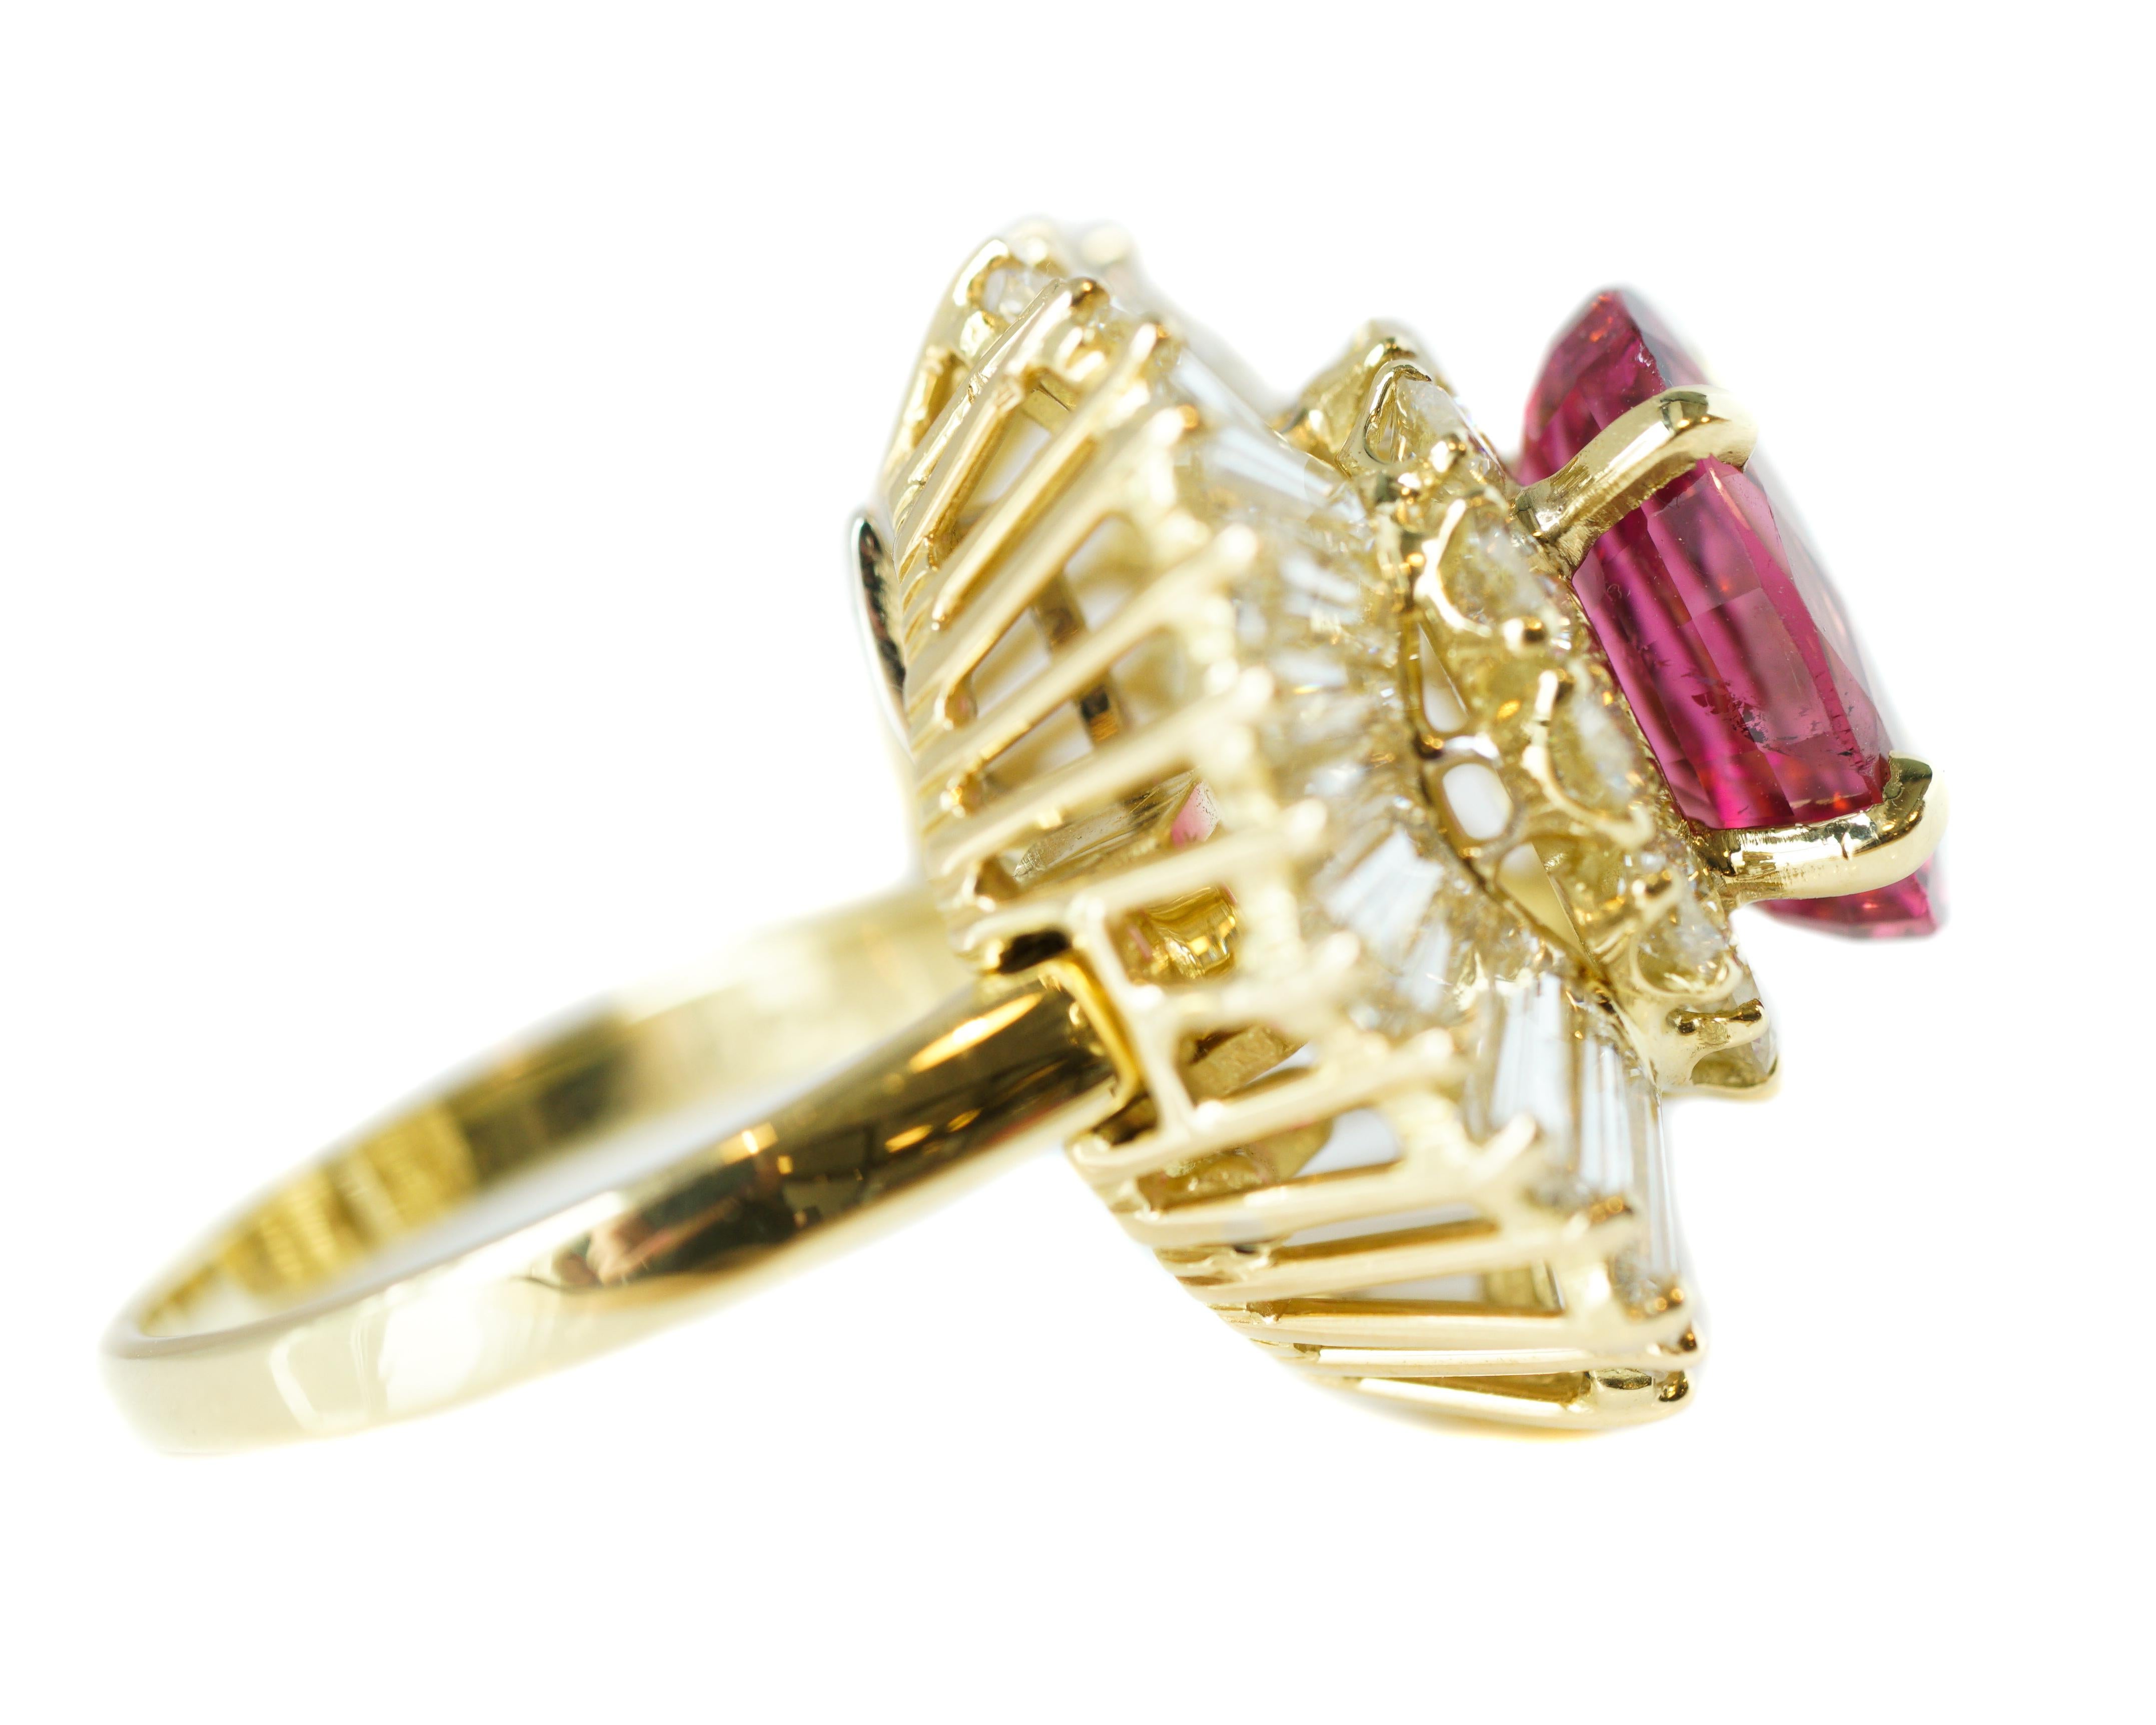 Contemporary 3 Carat Pink Tourmaline and 5 Carat Diamond Convertible Ballerina Ring Pendant